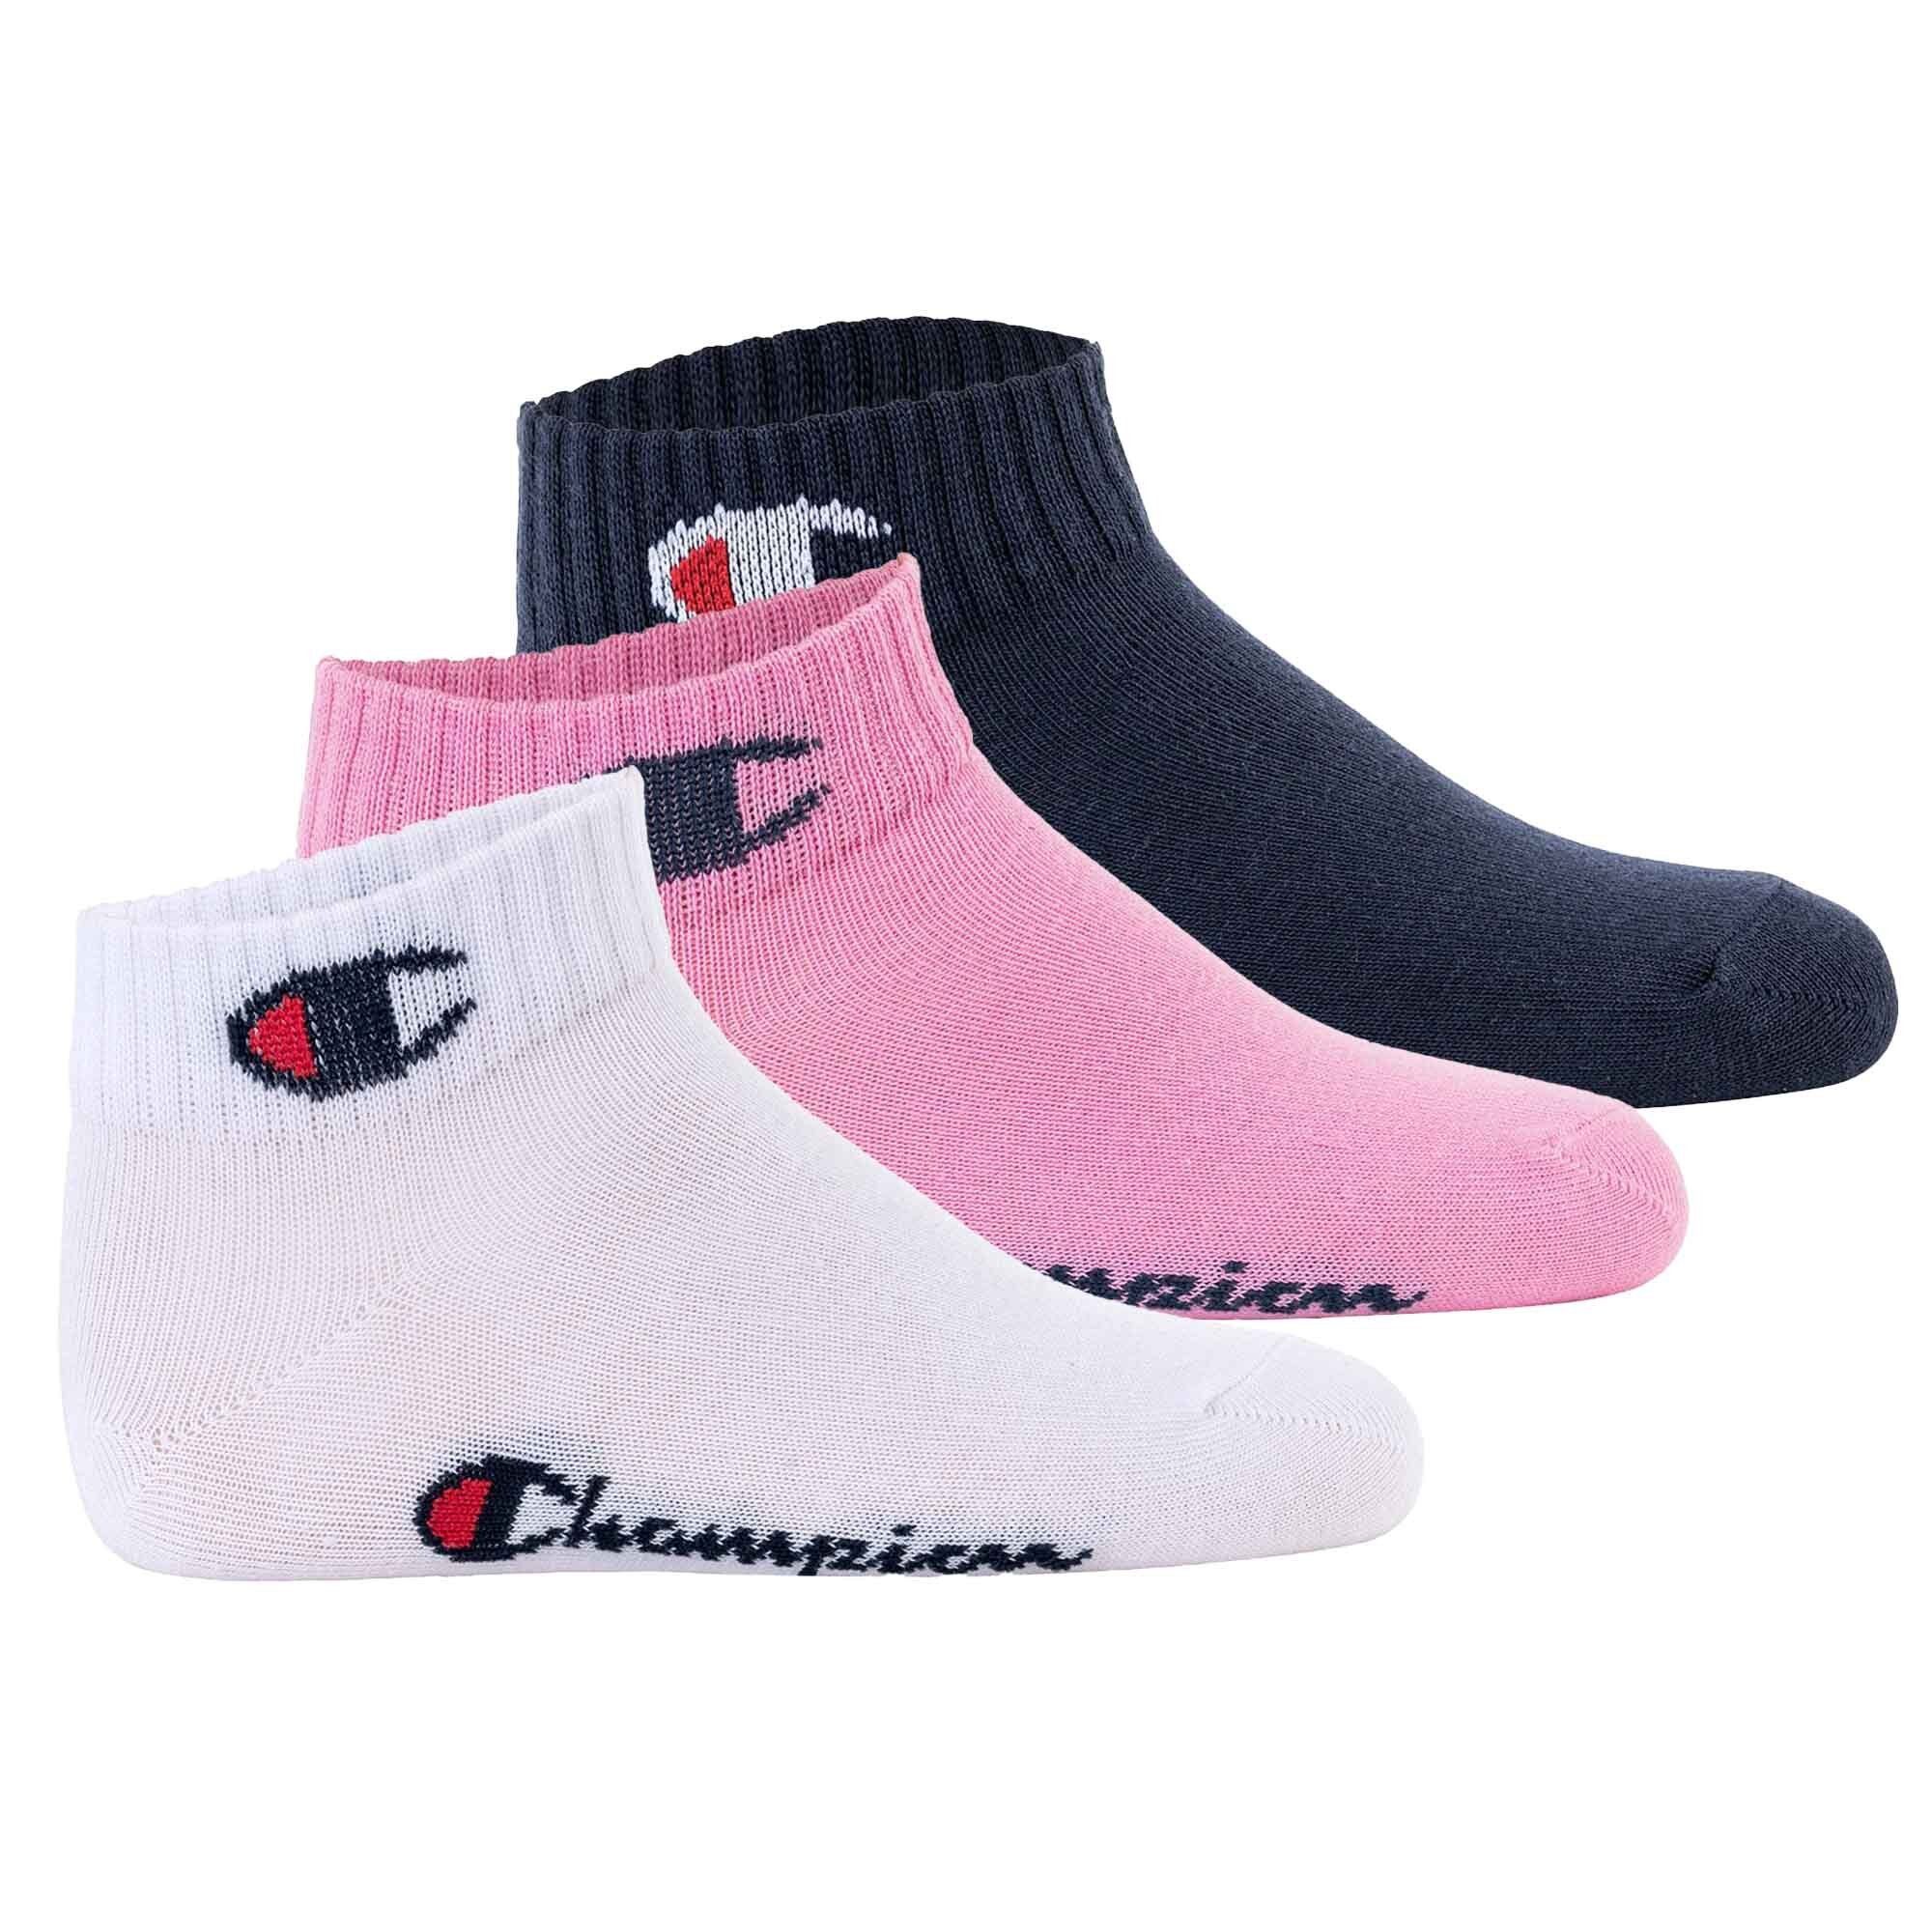 Champion Freizeitsocken Kinder Socken, 3er Pack - Quarter, Logo, einfarbig Pink/Weiß/Blau